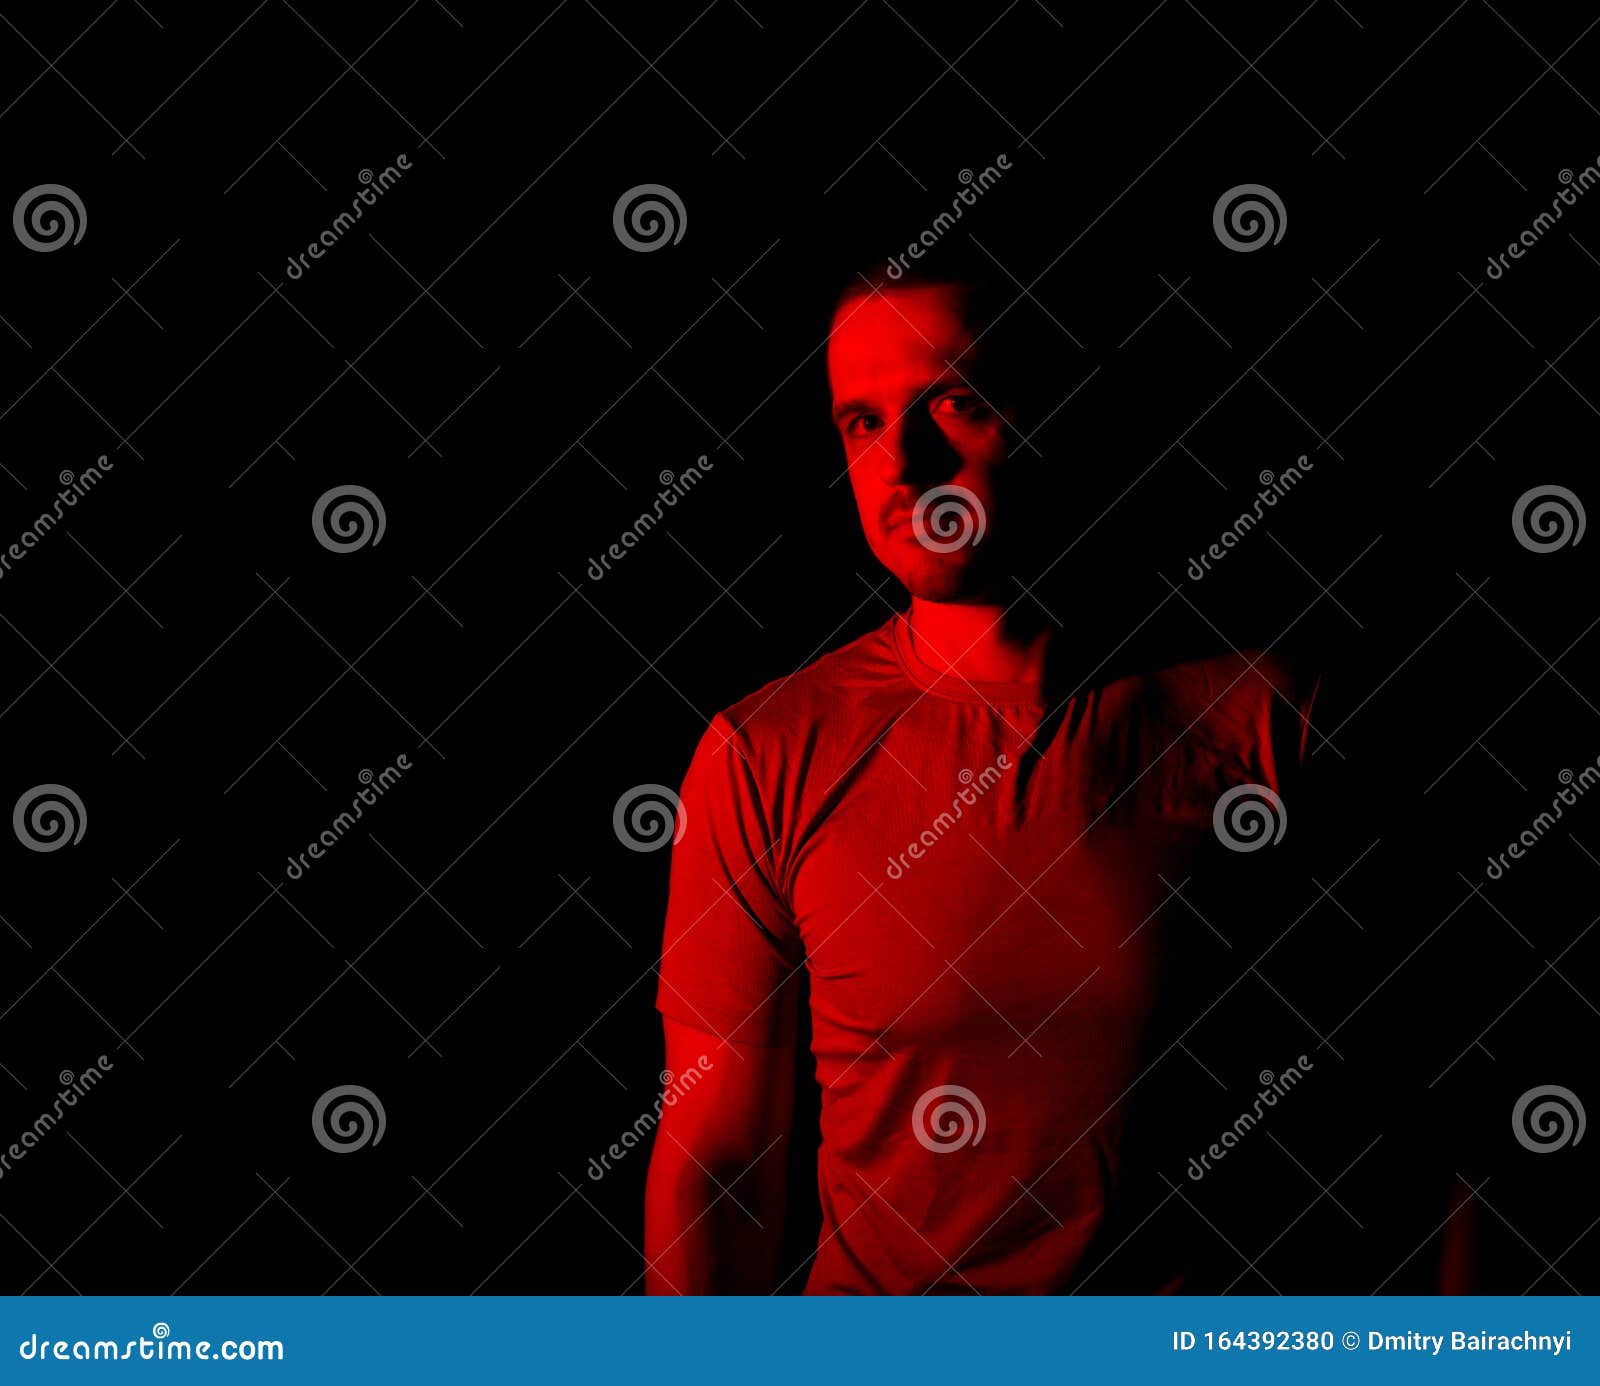 Rotes Licht Und Portrait Des Menschen Auf Schwarzem Hintergrund Stockfoto -  Bild von schwarzes, grau: 164392380